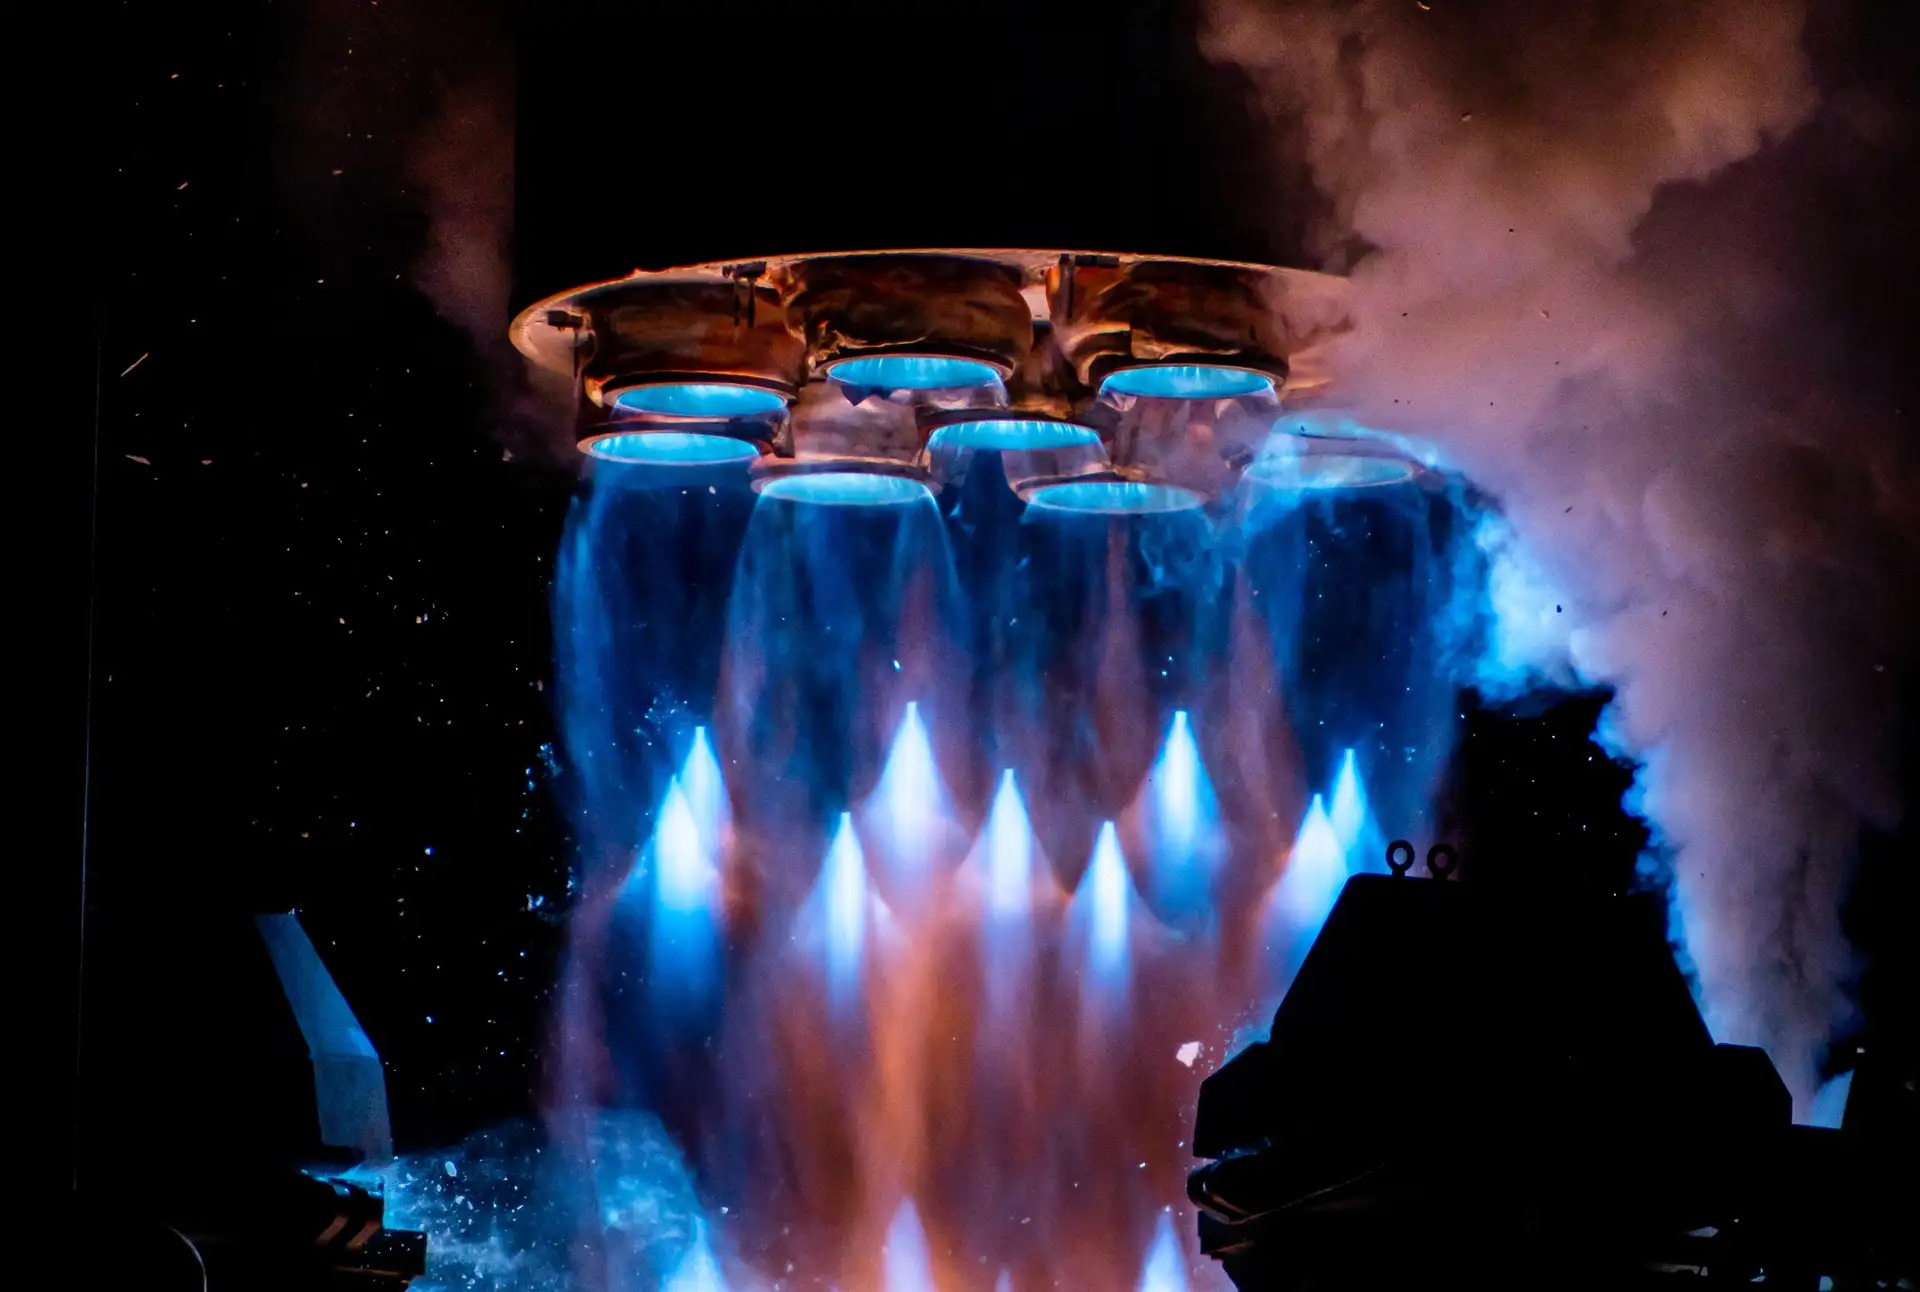 terran 1 michael baylorjfif - Spektakuläre Bilder vom Start der ersten im 3D-Druckverfahren hergestellten Rakete.